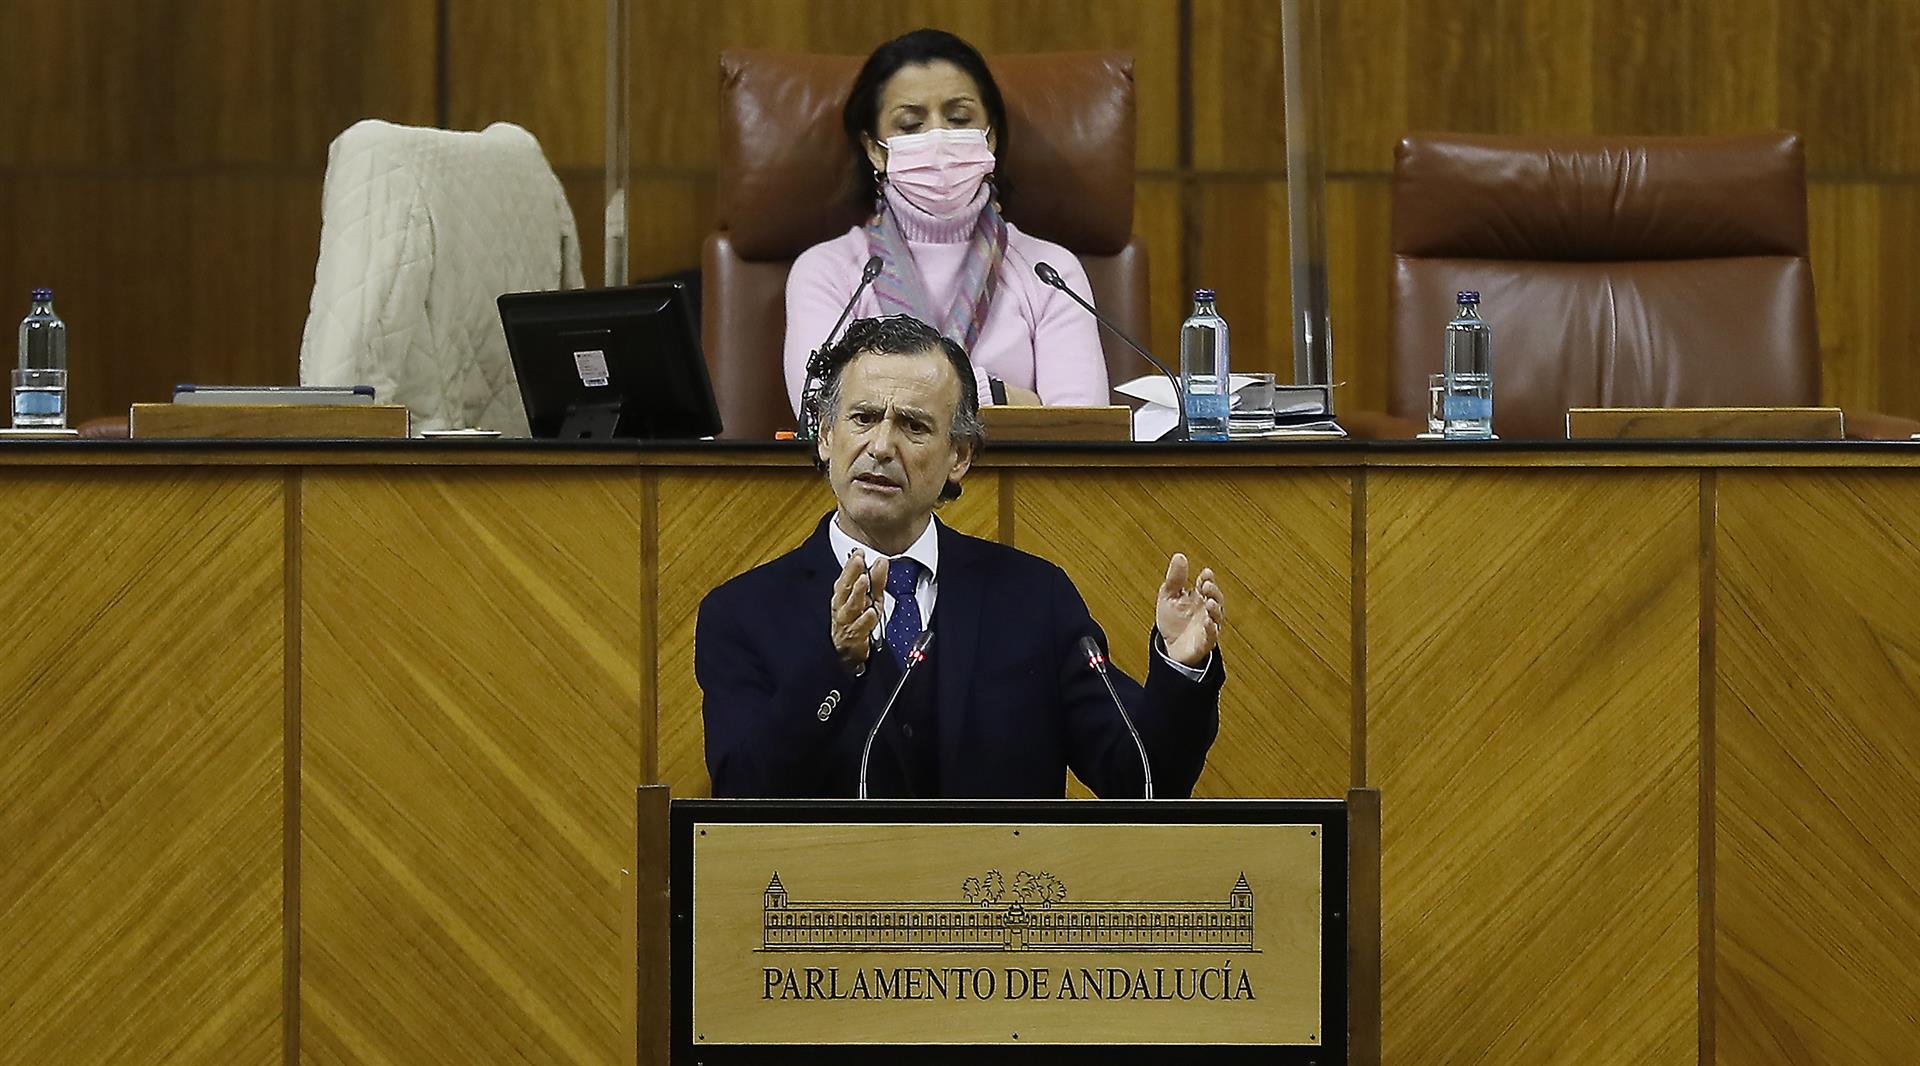 El diputado del grupo popular Pablo José Venzal, durante una intervención en el parlamento. EFE/Archivo